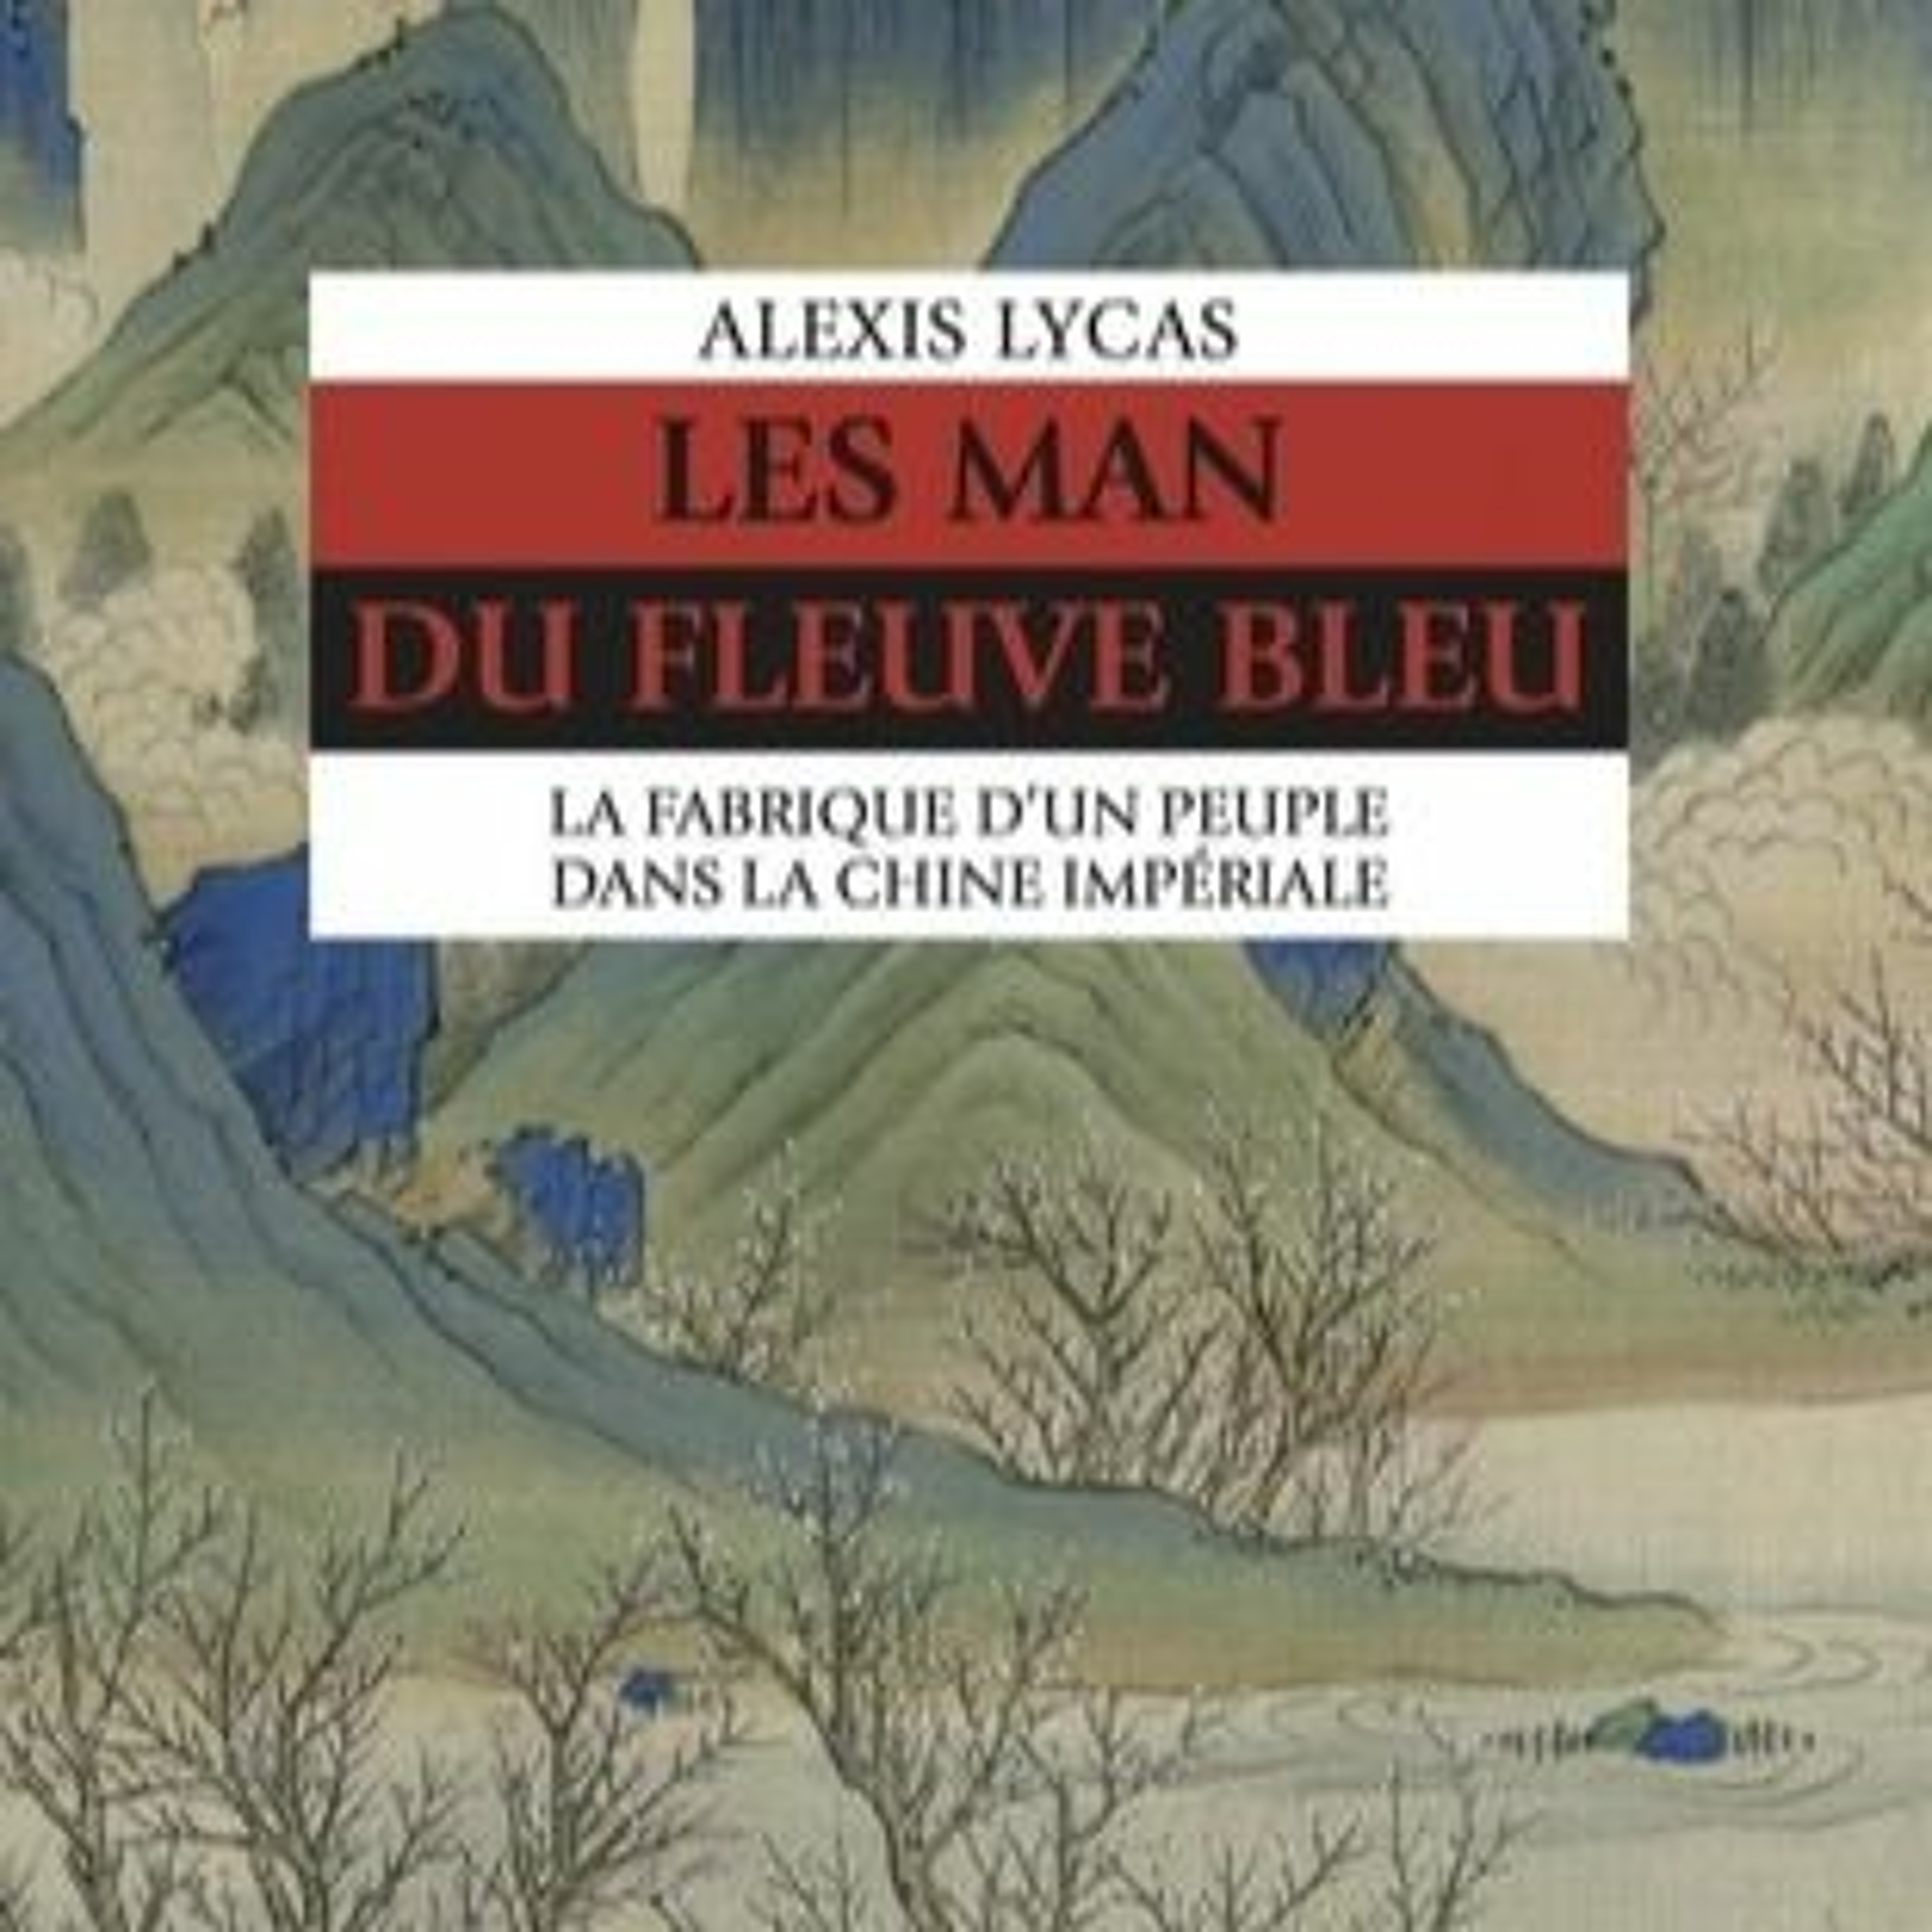 Chemins d'histoire-Les Man du fleuve Bleu, avec A. Lycas-28.05.23